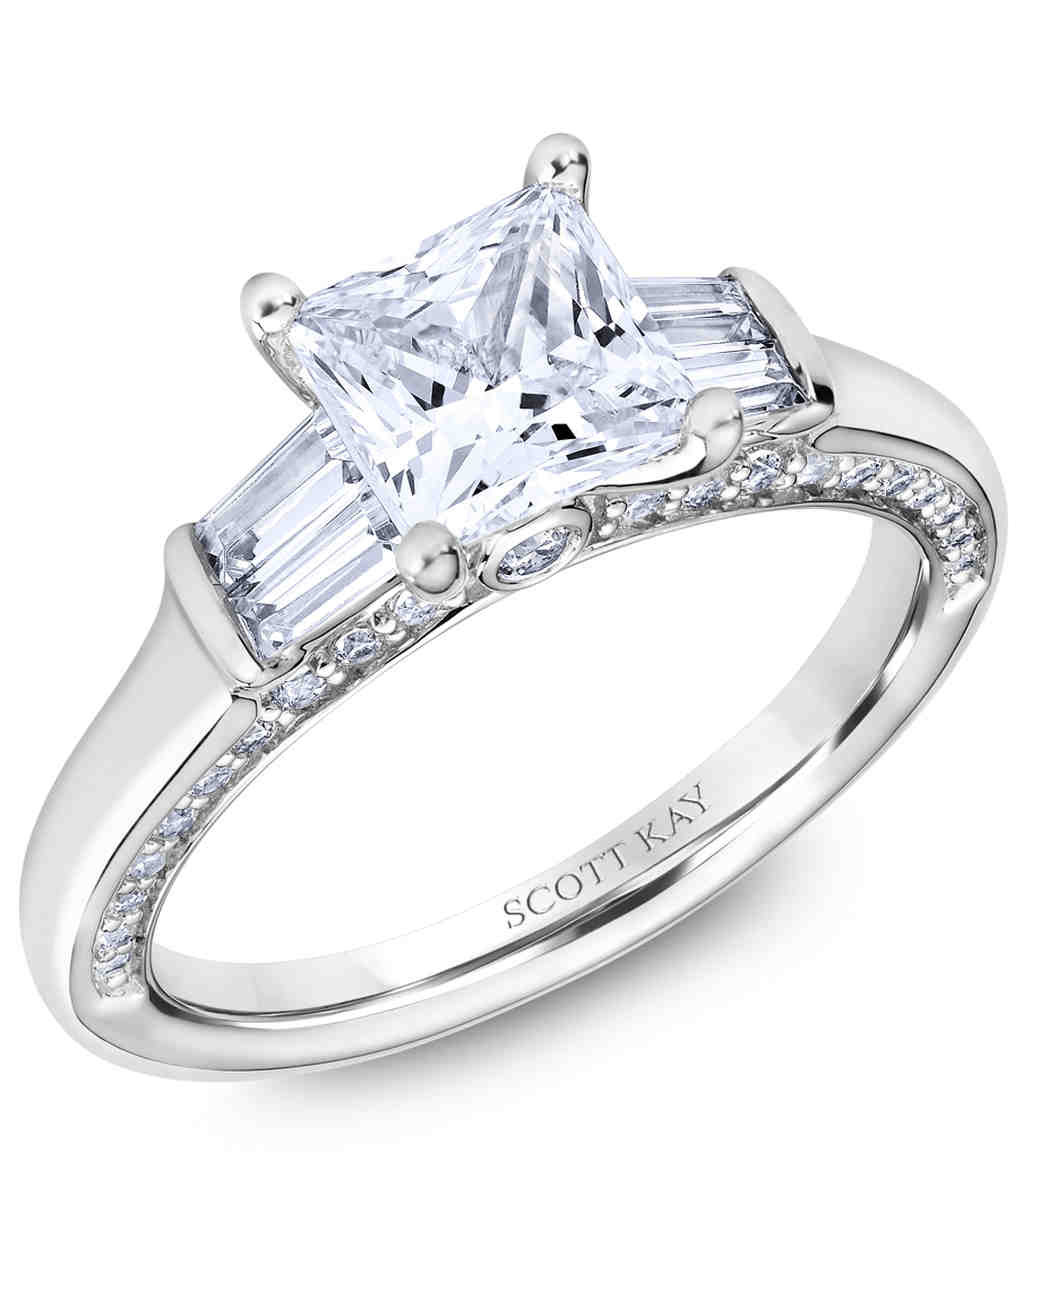 Princess Cut Wedding Rings
 30 Princess Cut Diamond Engagement Rings We Love